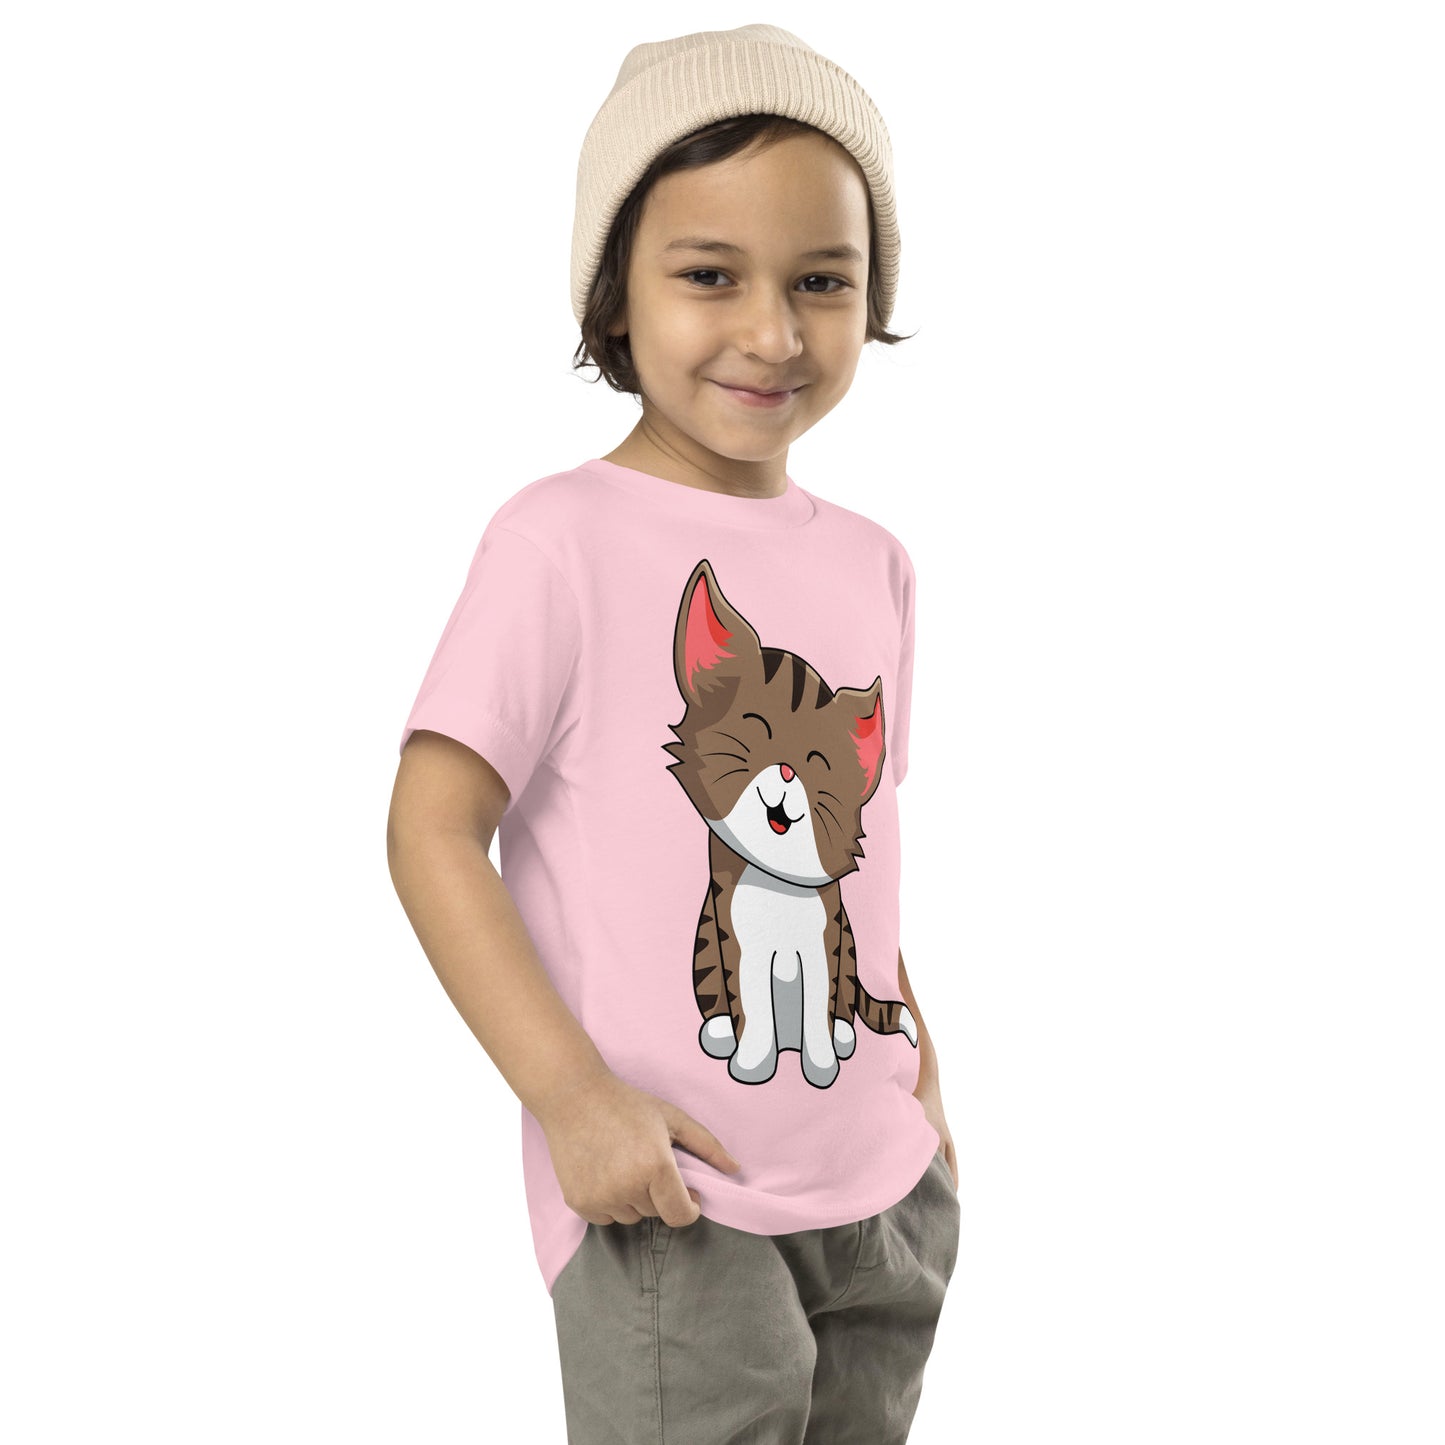 Cute Baby Cat T-shirt, No. 0587